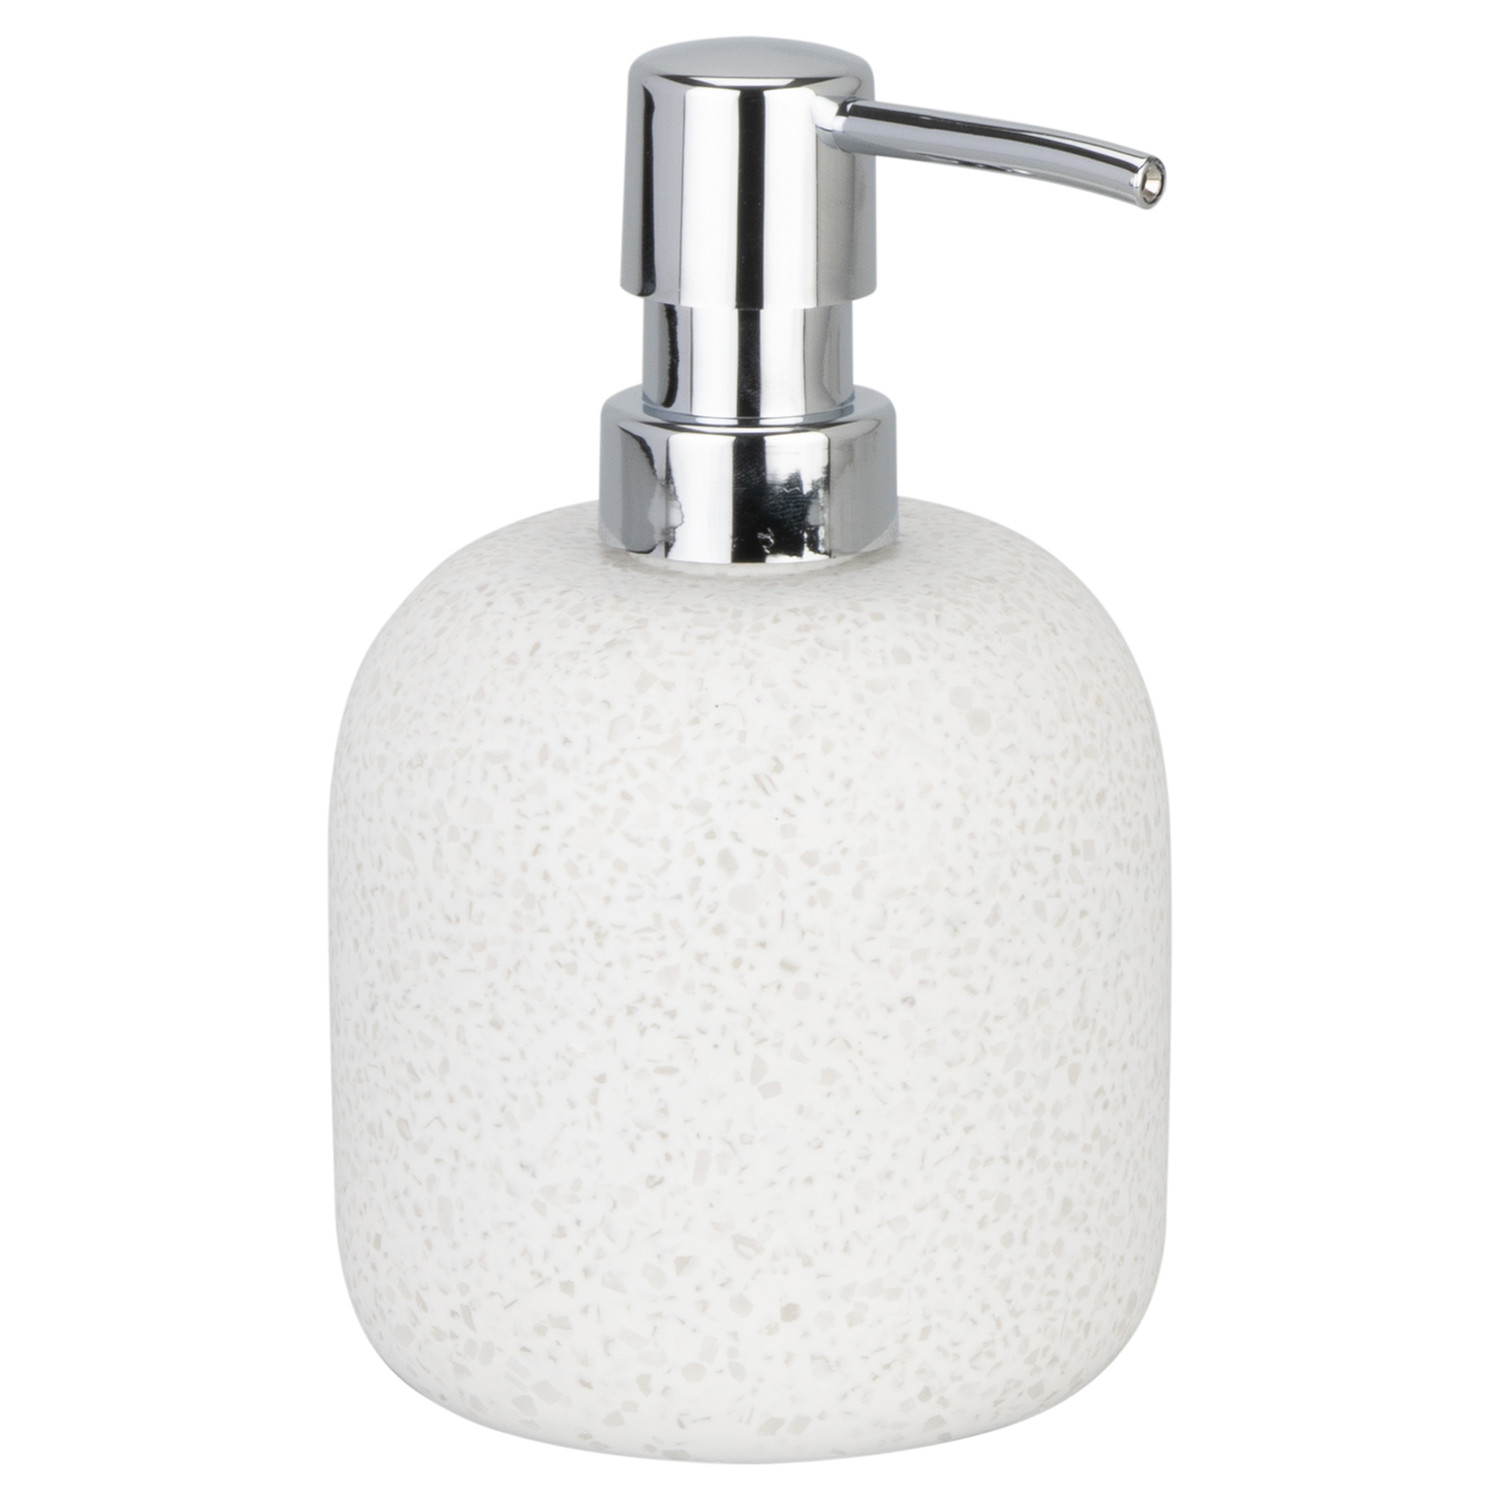 Caliza Soap Dispenser - White Image 1